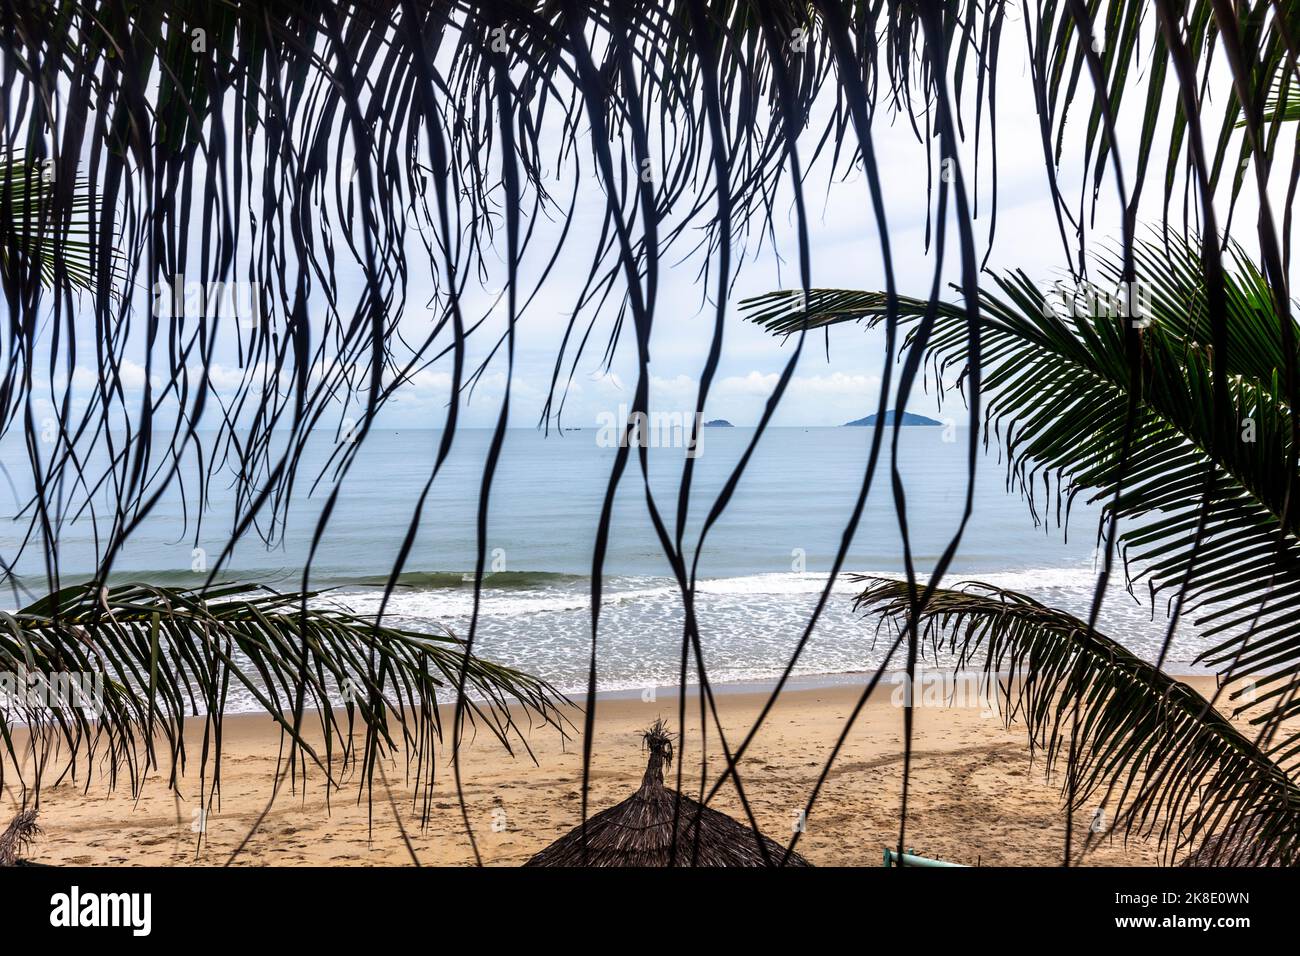 Ein erhöhter Blick auf das Meer mit Strandhütten und Fußabdrücken im Sand, die durch ein kleines Fenster mit Palmen blicken. Stockfoto